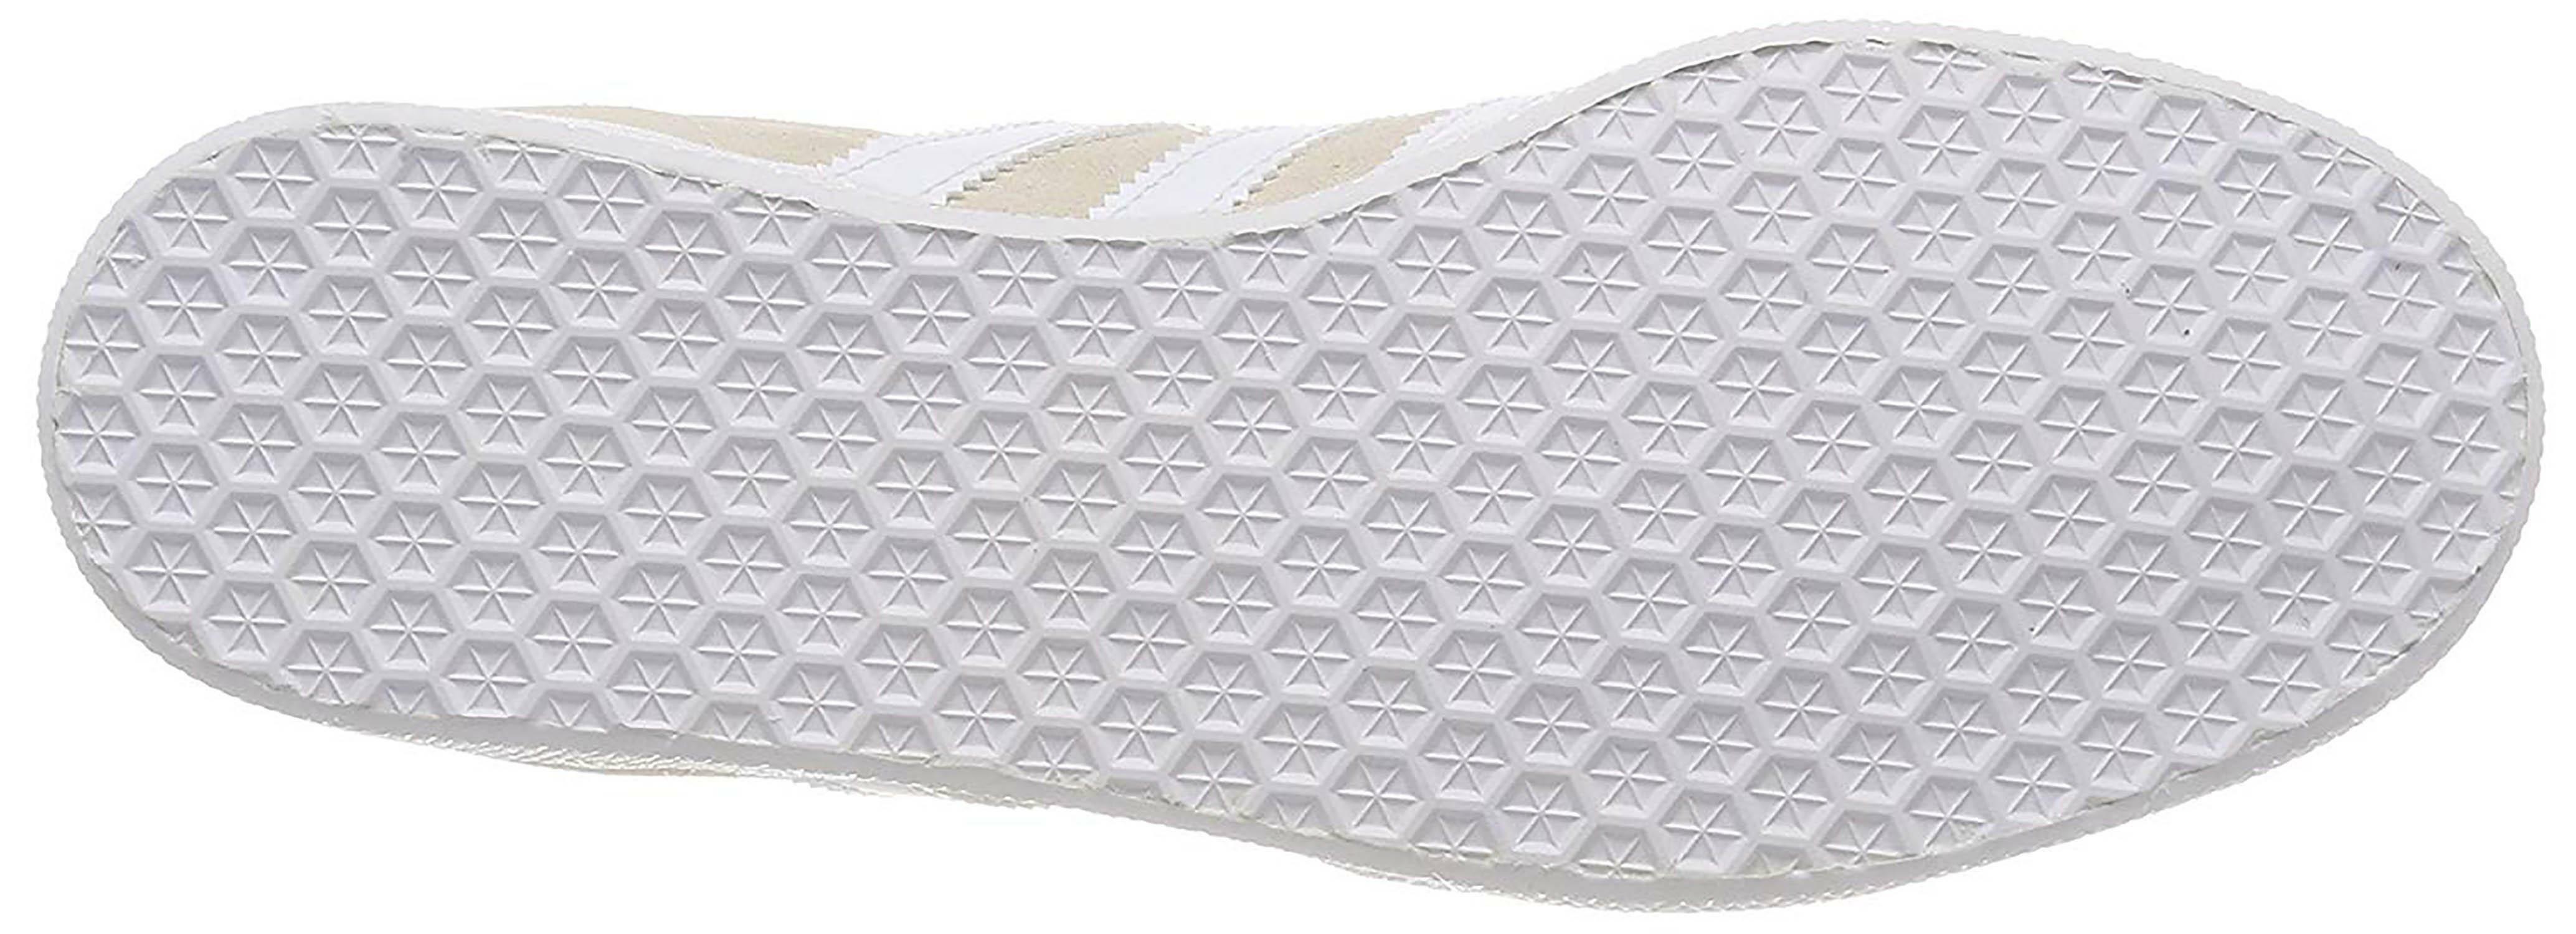 adidas adidas gazelle scarpe sportive beige b41646